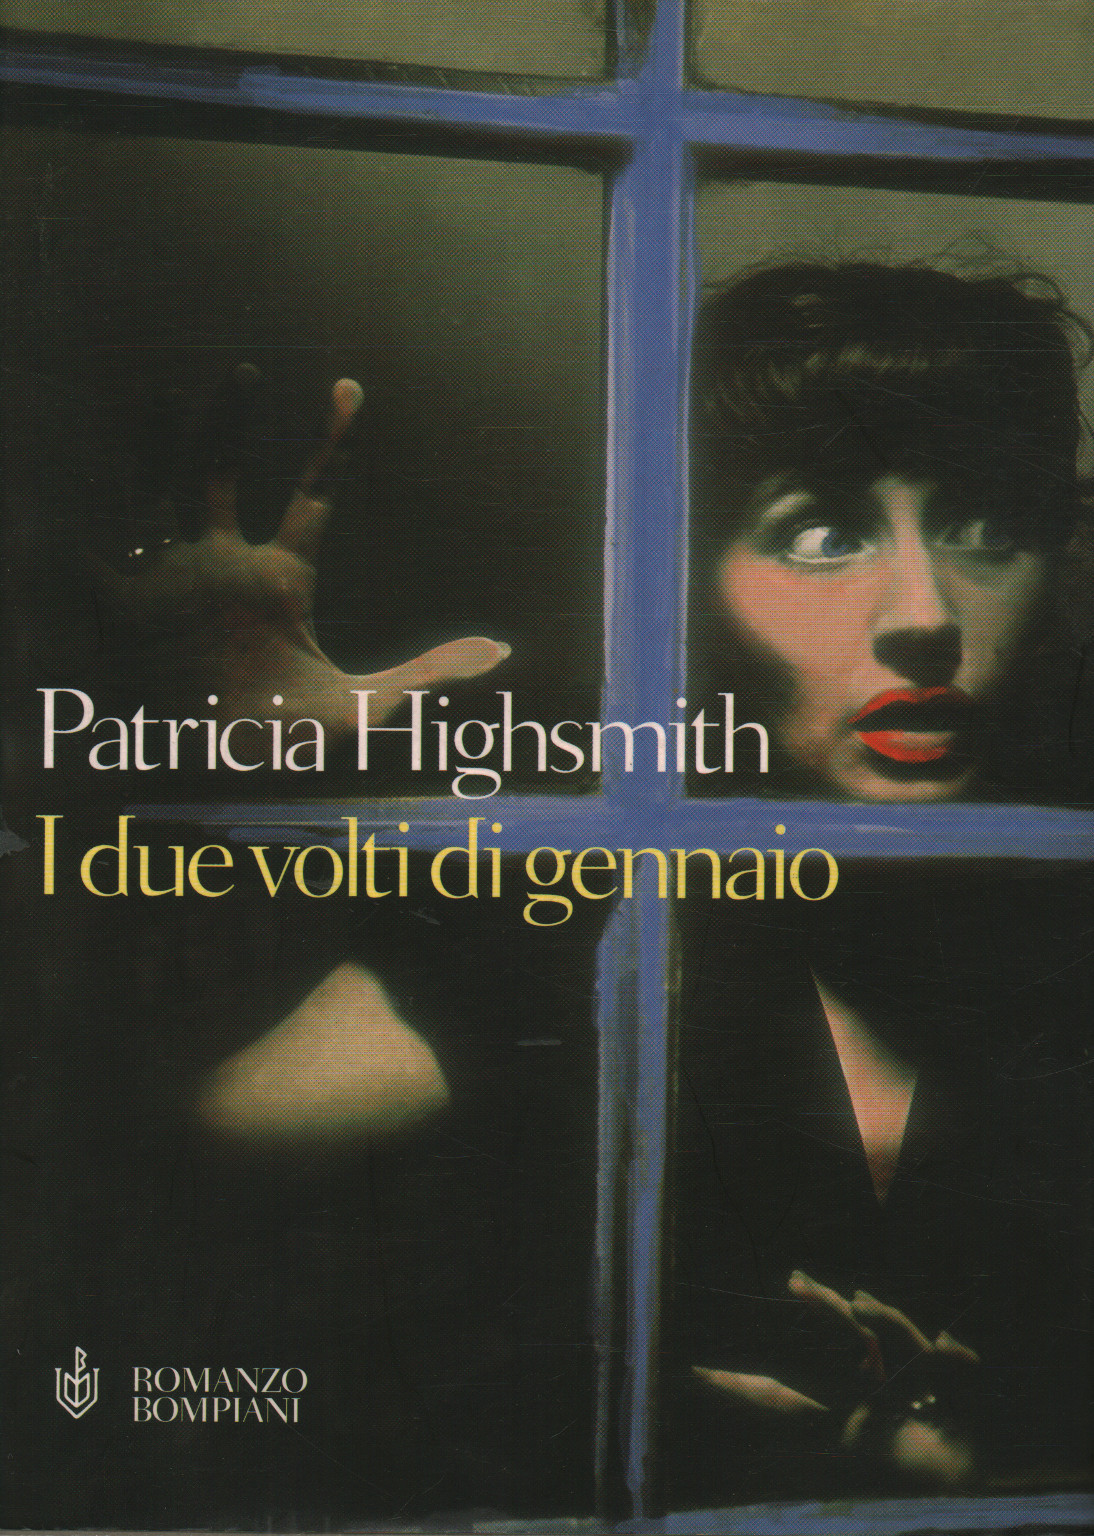 Les deux visages de janvier, Patricia Highsmith